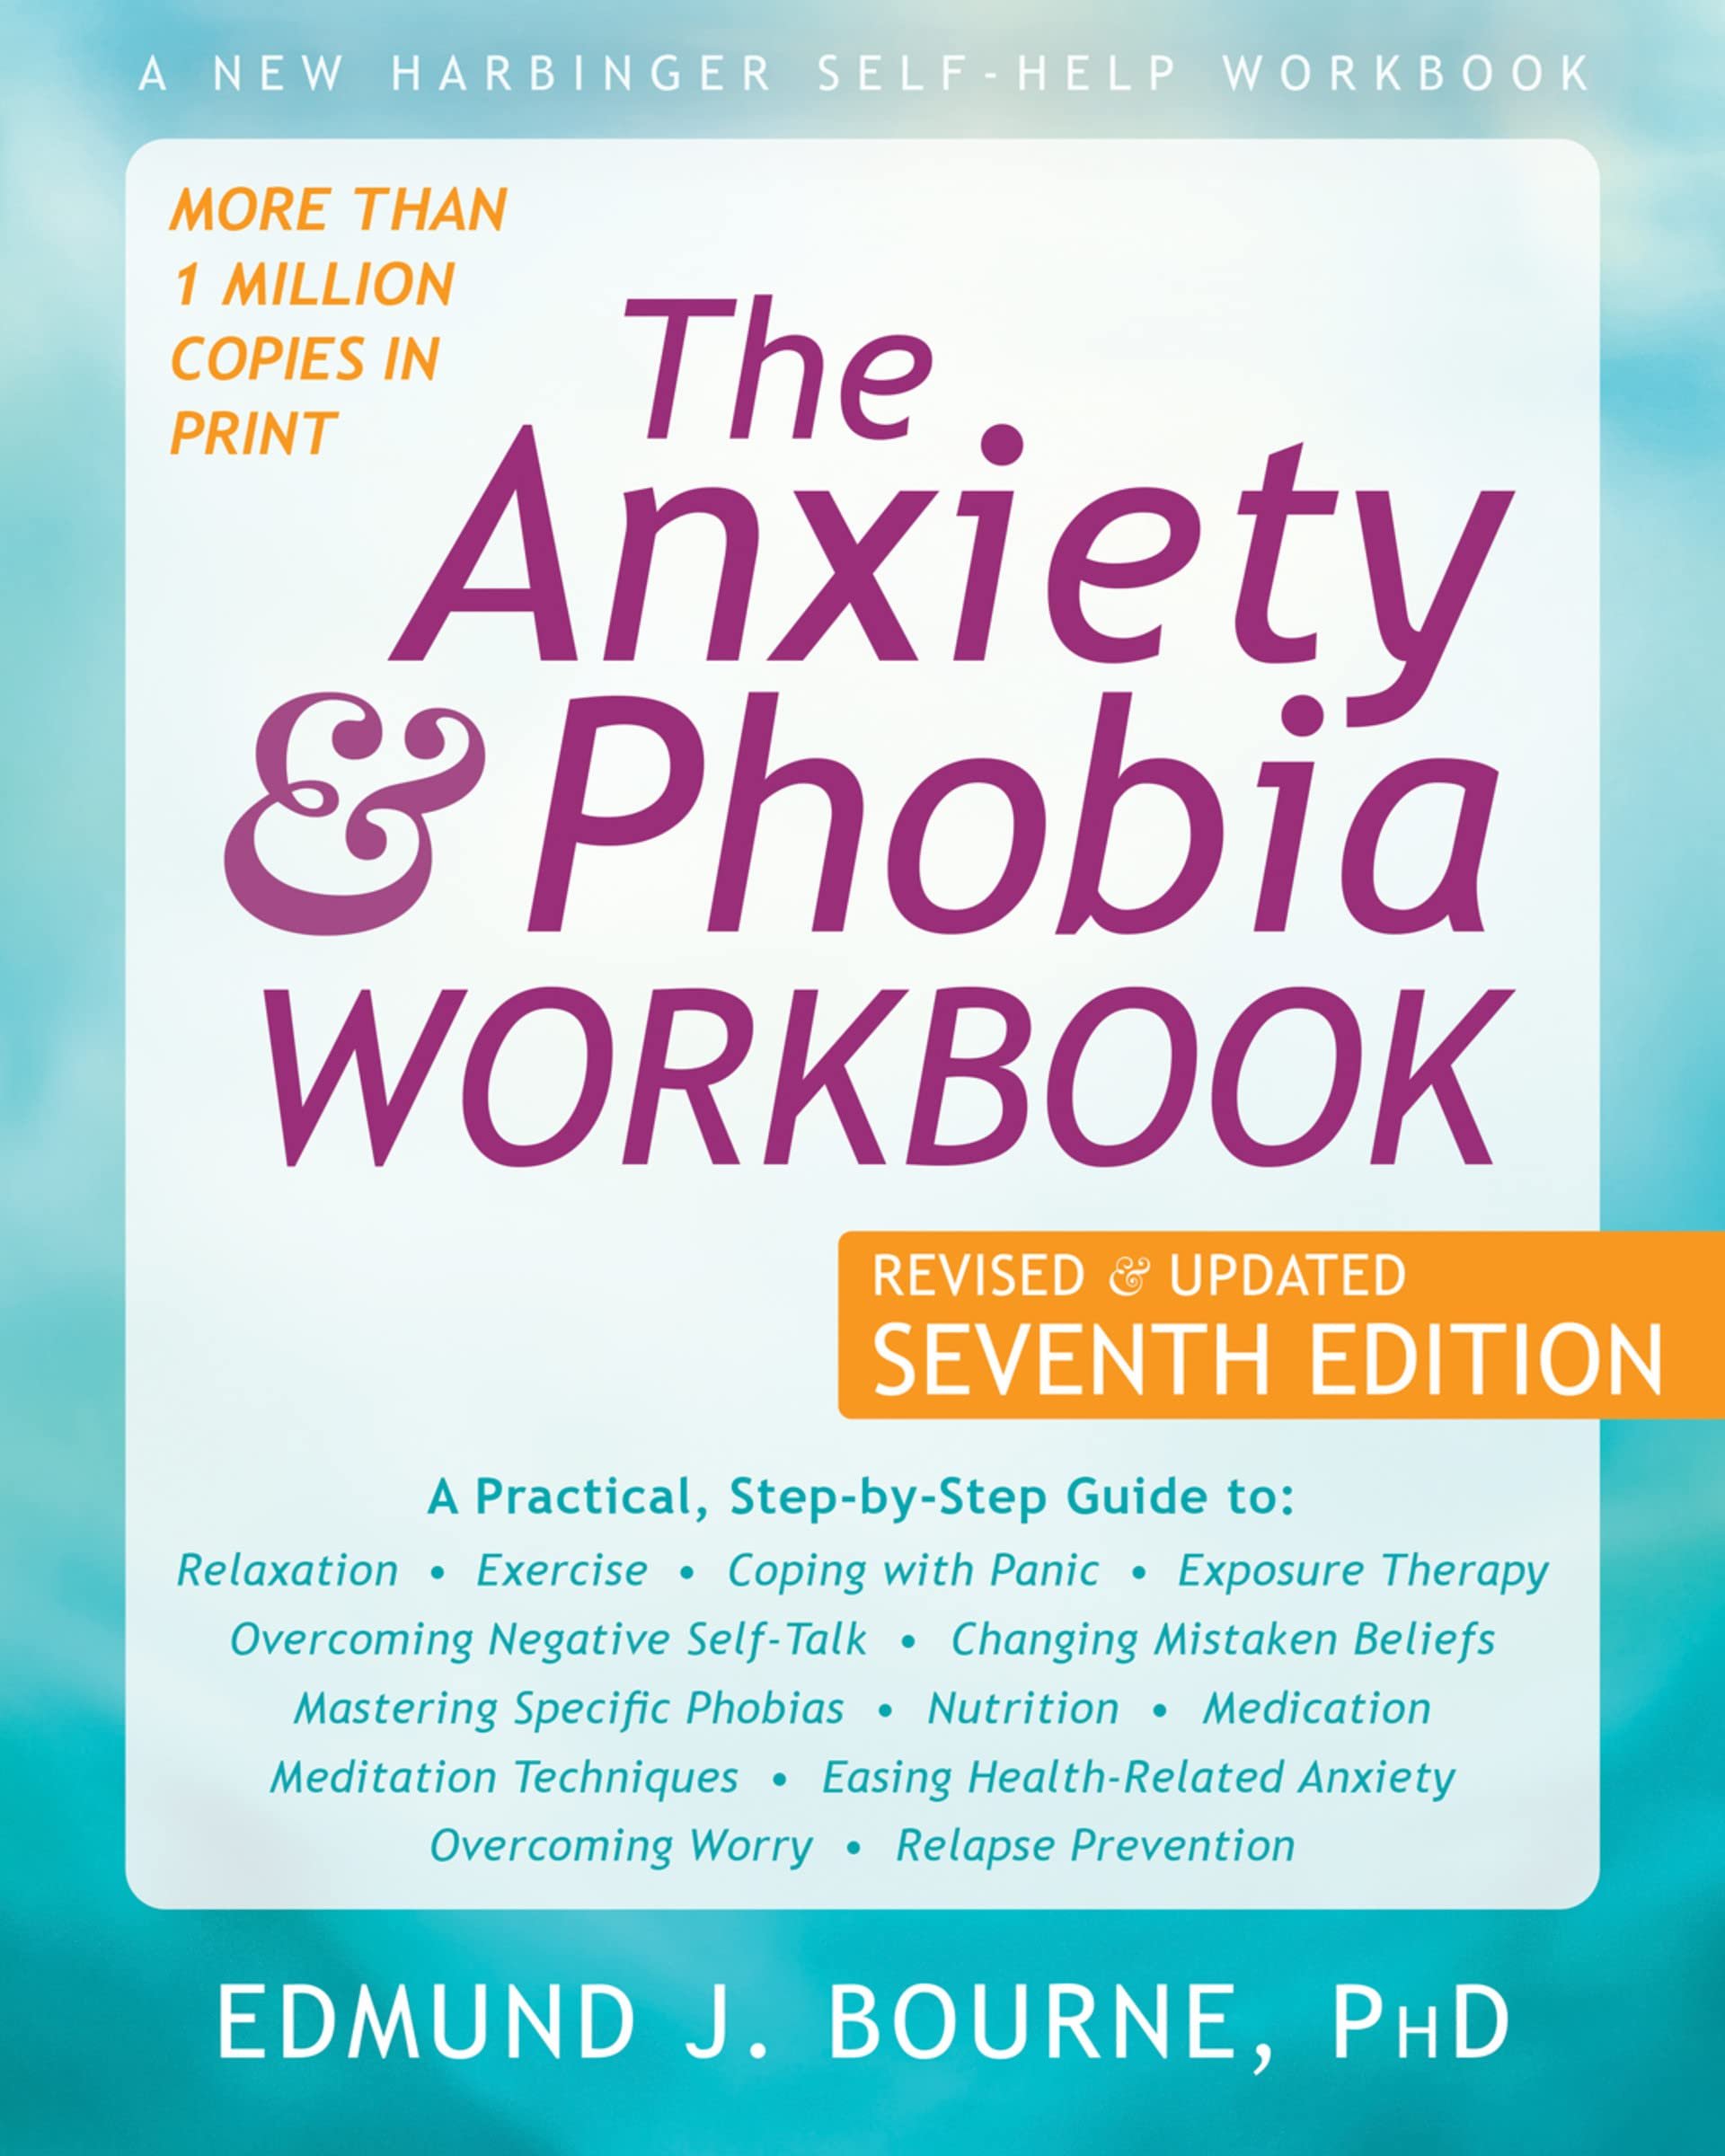 The Anxiety & Phobia Workbook by Edmund J. Bourne